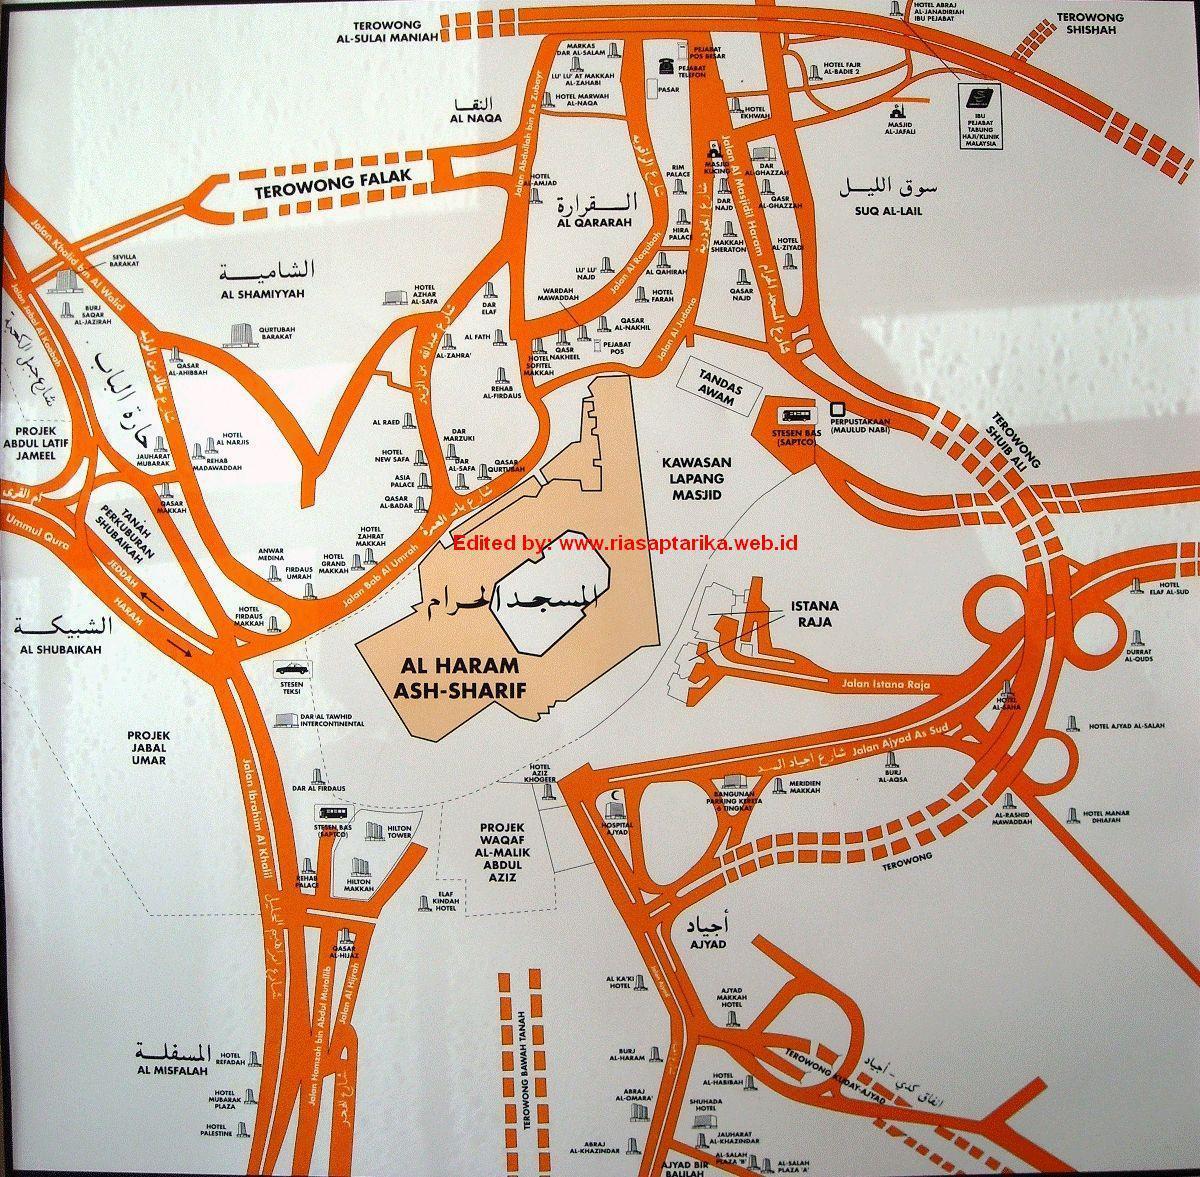 քարտեզ misfalah Մեքքա քարտեզի վրա